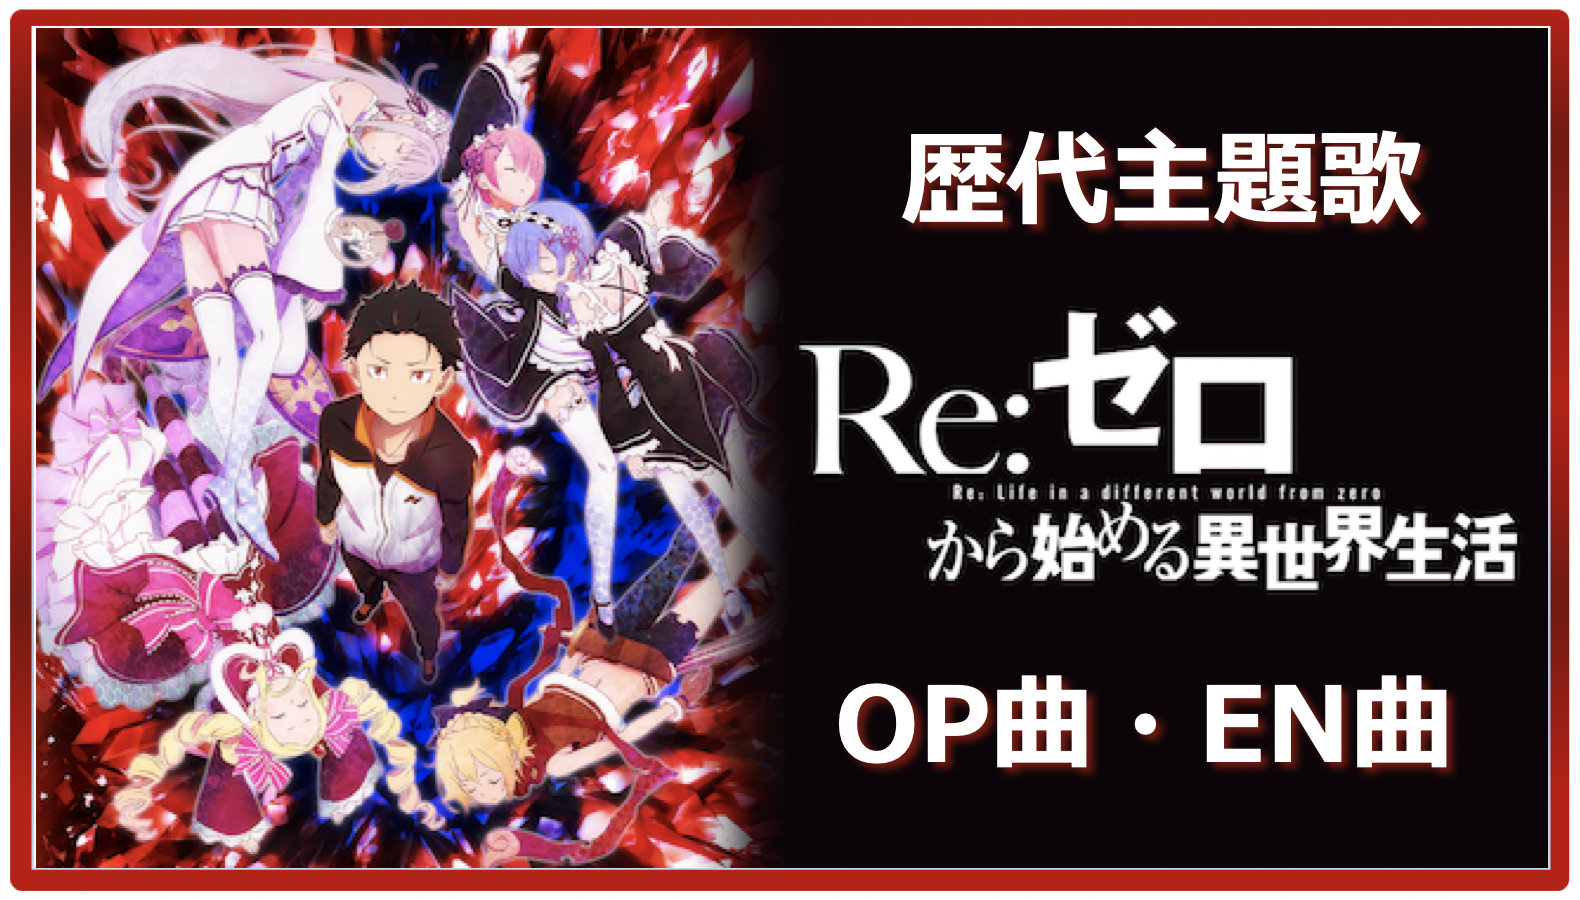 Re ゼロ 歴代アニメ主題歌 Op En 全 14 曲 まとめ 人気ランキング